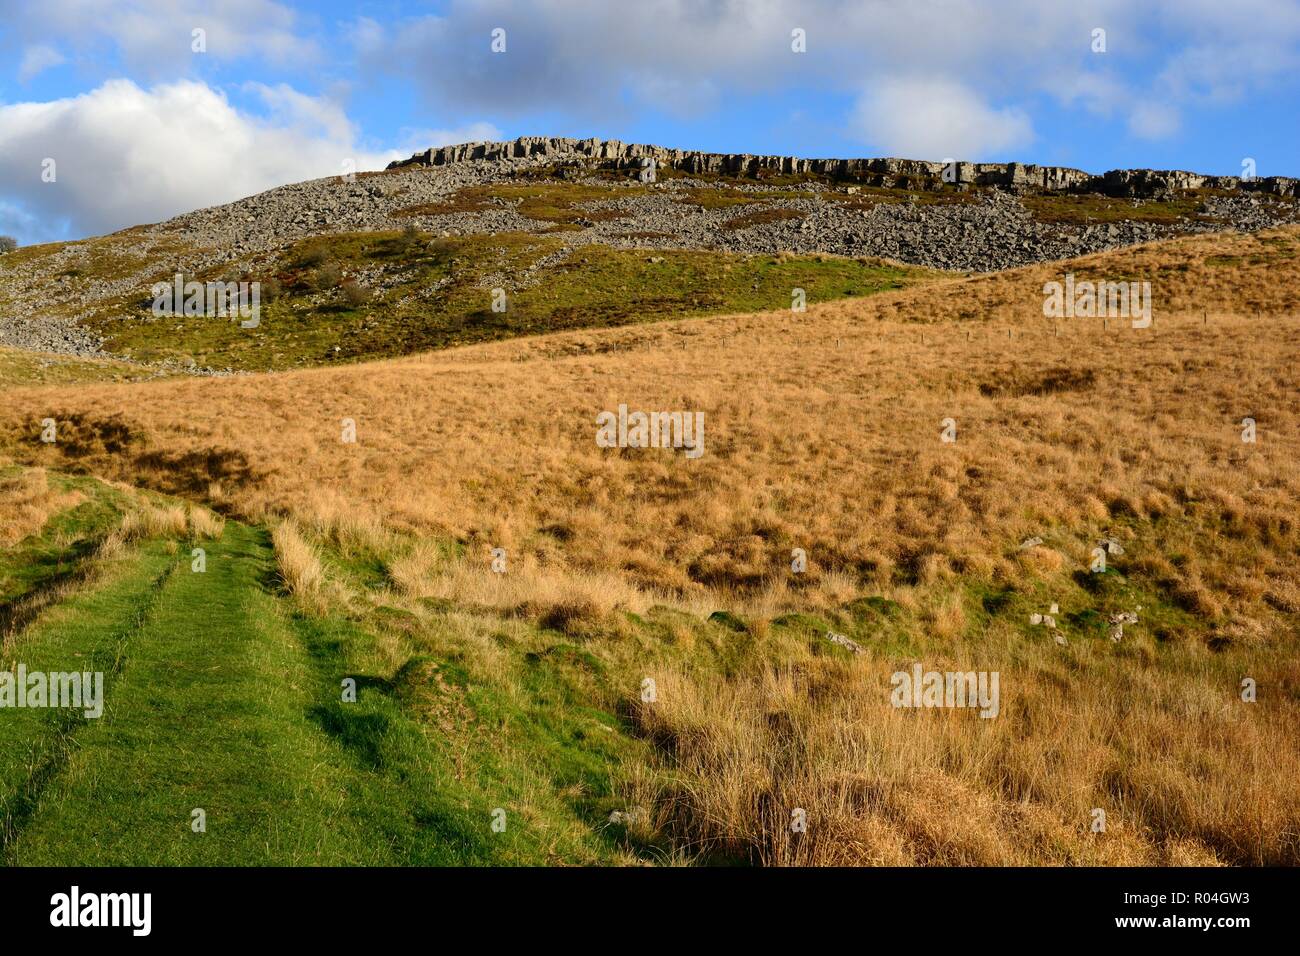 Ogof Ffynnon Ddu National Nature Reserve sehr große Ausdehnung der Moorlandschaften mit herrlichem Blick Brecon Beacons National Park Wales Cymru GROSSBRITANNIEN Stockfoto